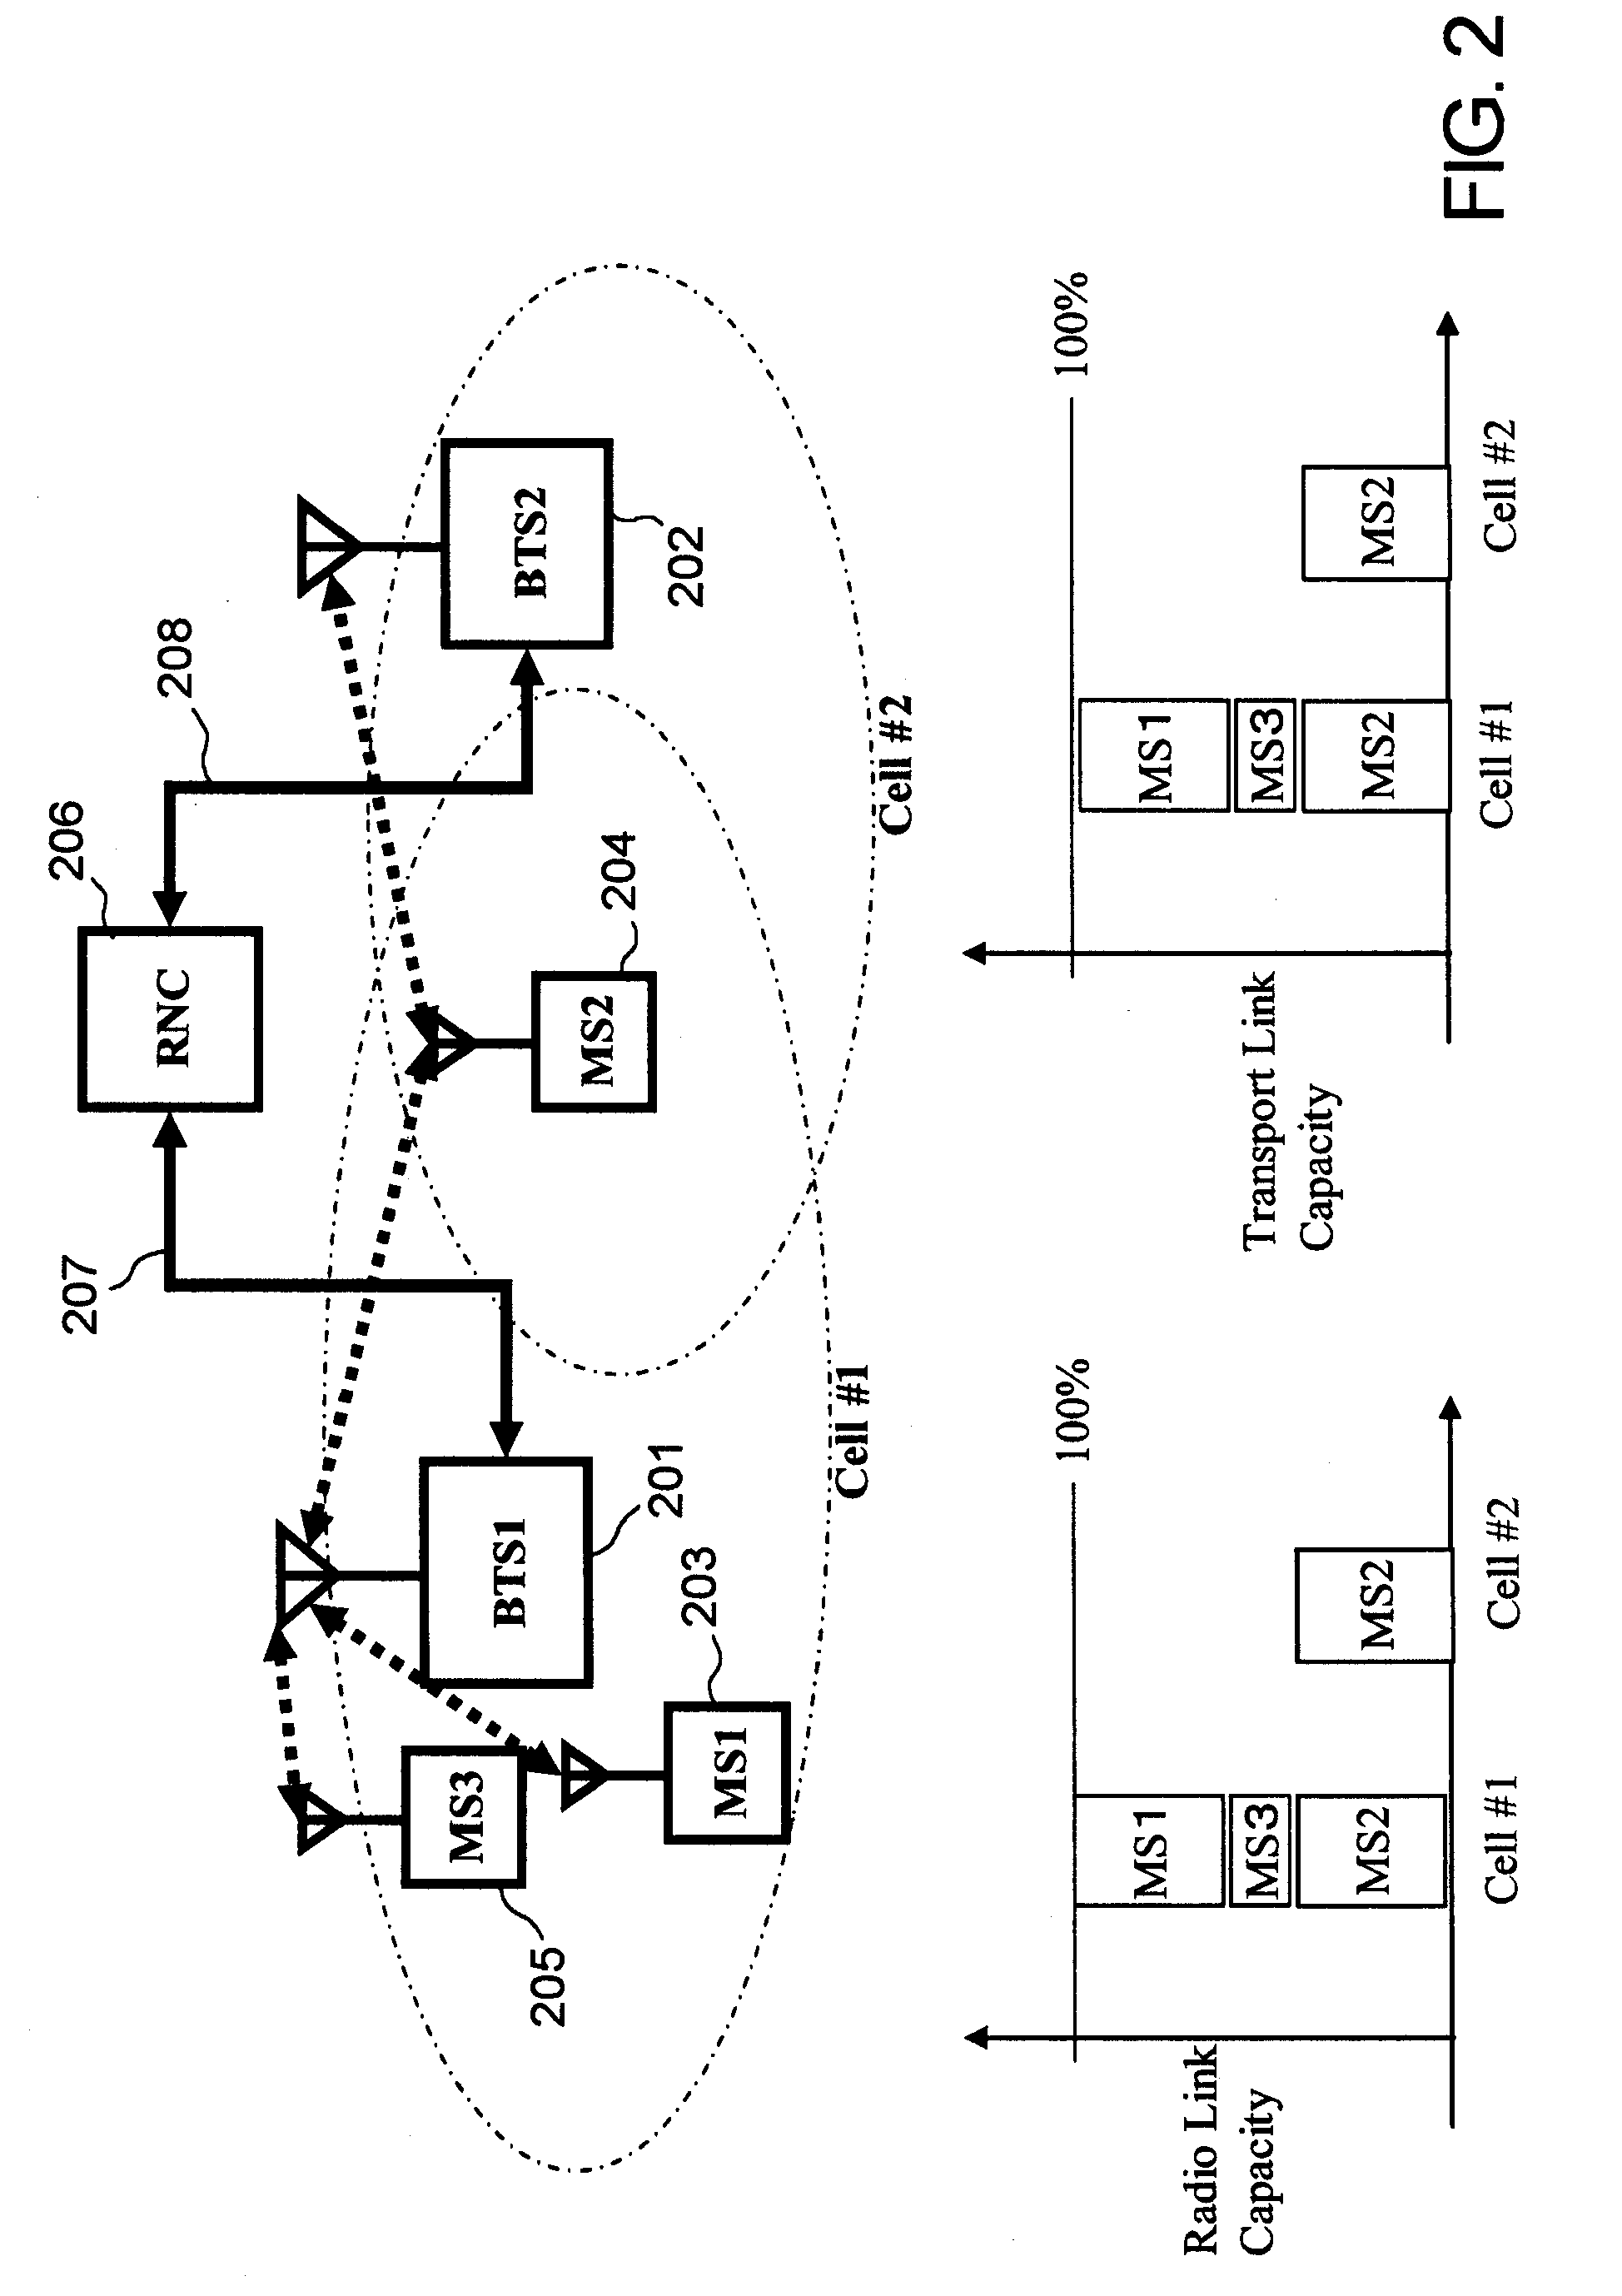 Transmission method for uplink transport layer